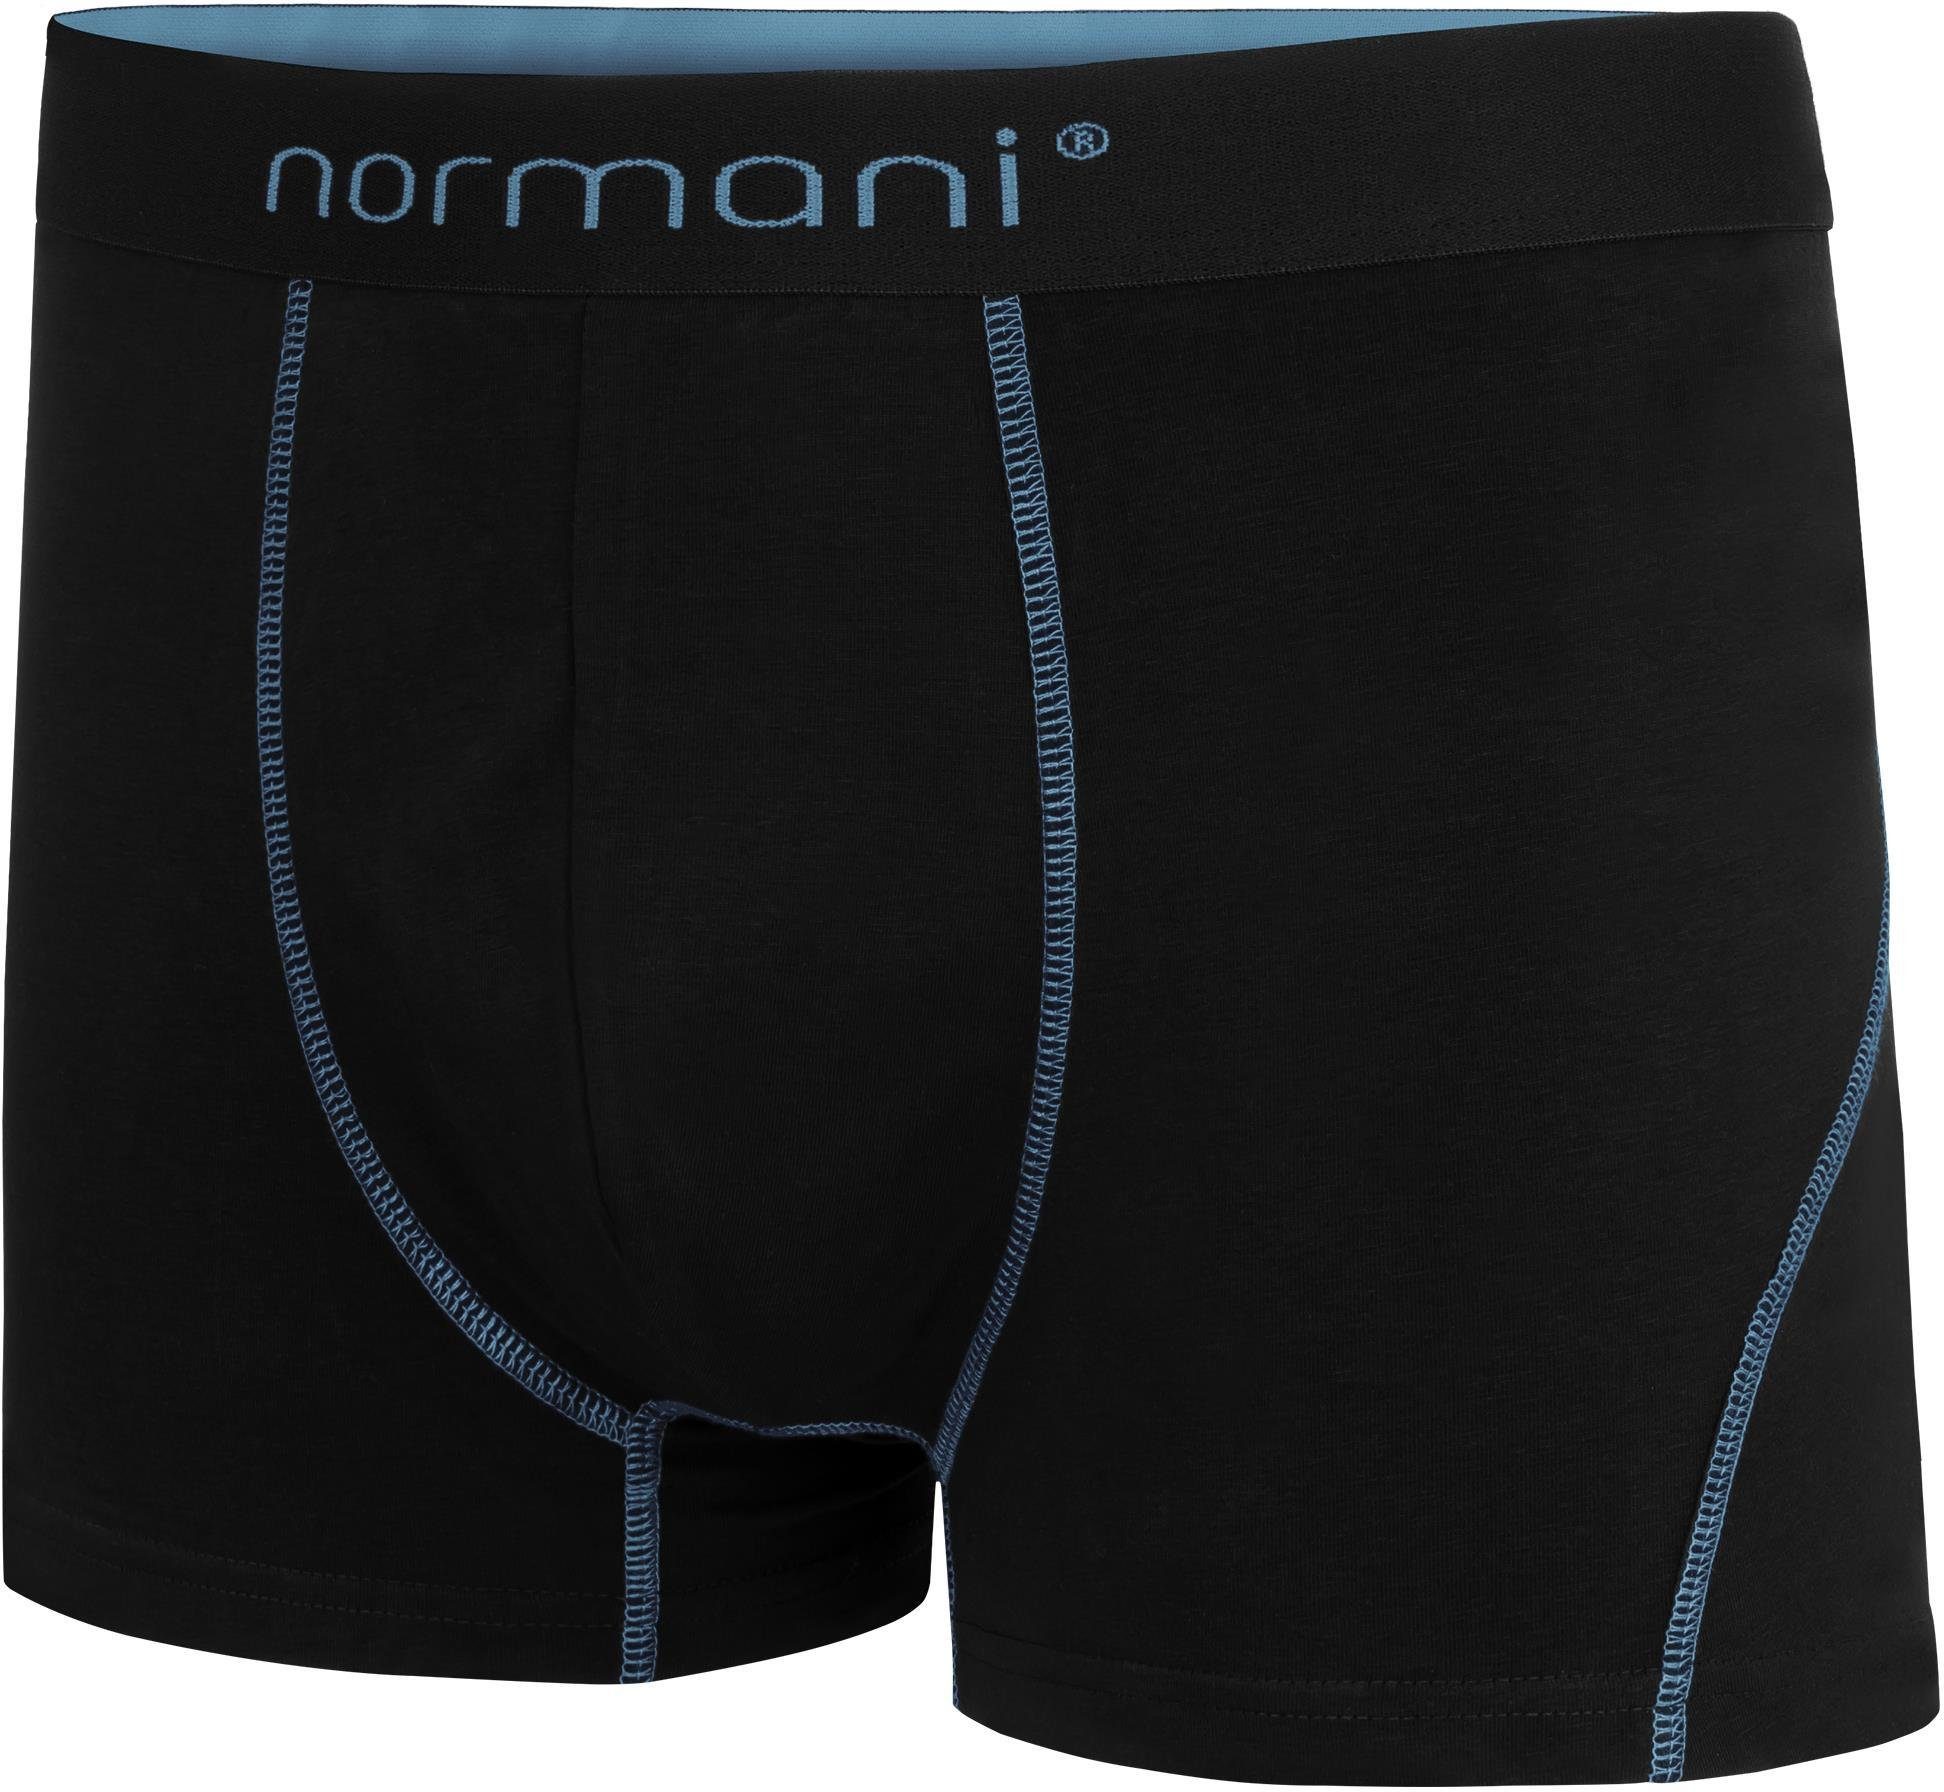 Männer Baumwoll-Boxershorts für x Hellblau normani 12 aus Boxershorts Herren Baumwolle atmungsaktiver Unterhose